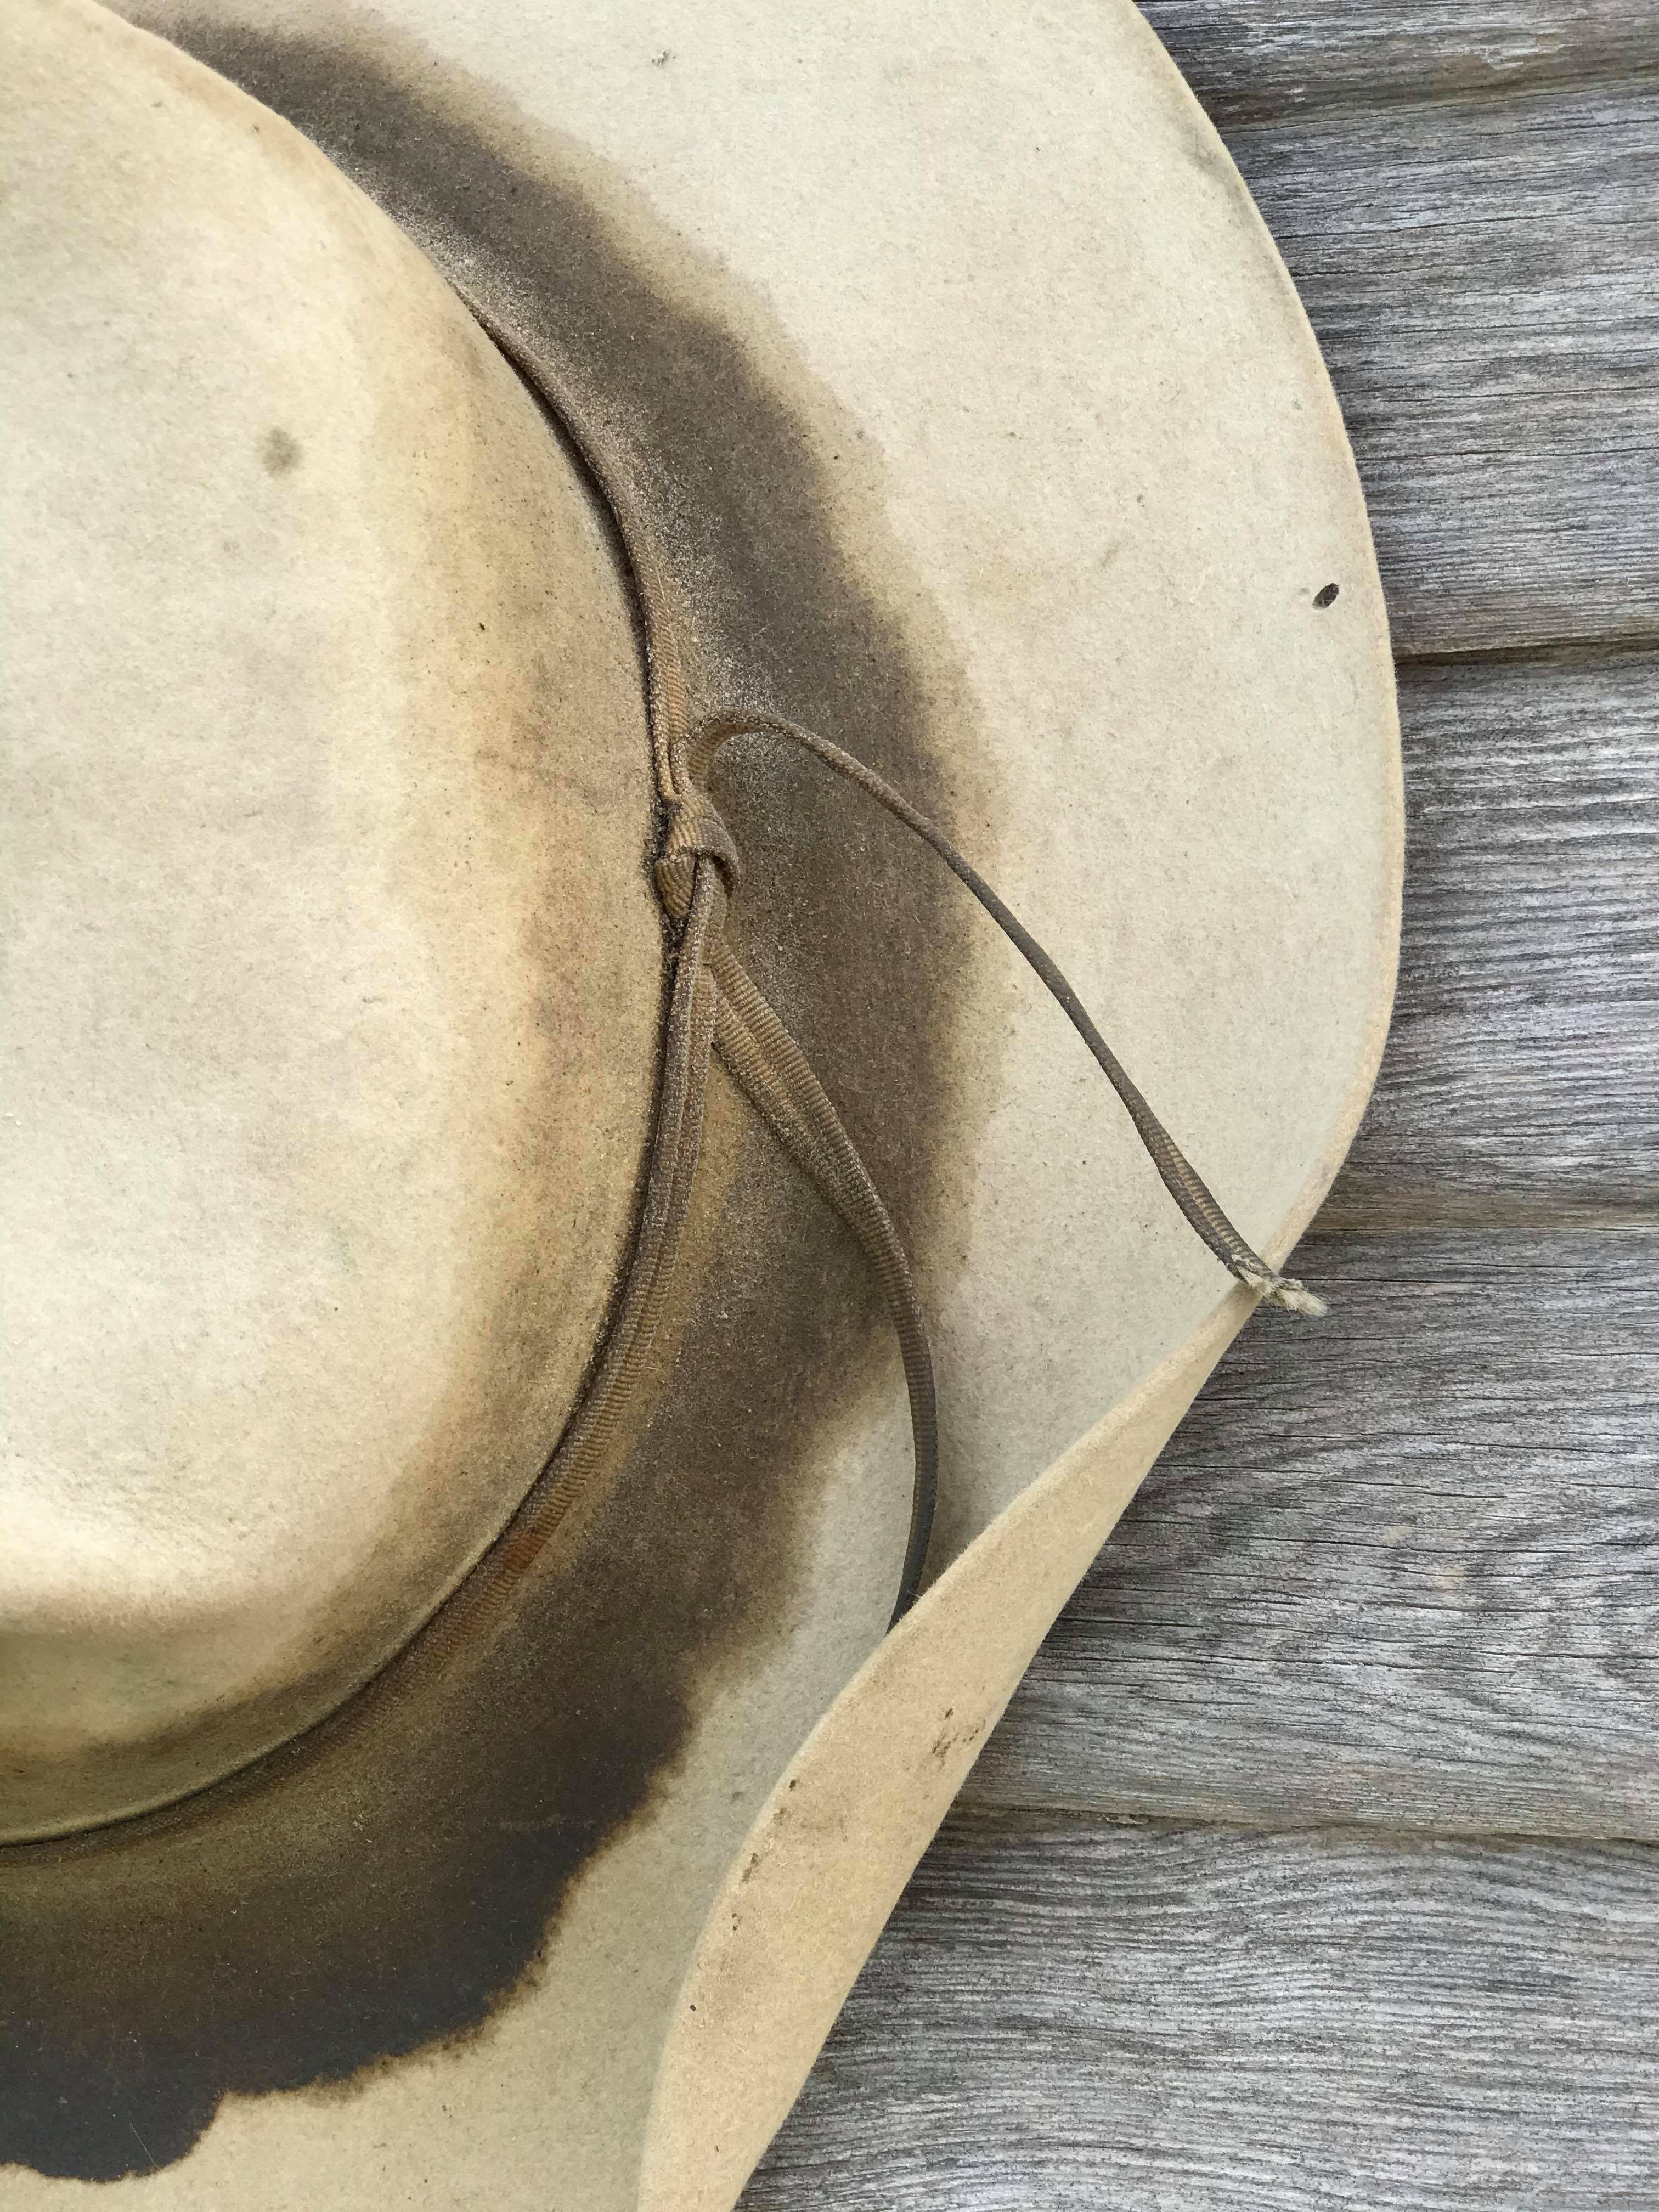 Vintage Felt Cowboy Hat